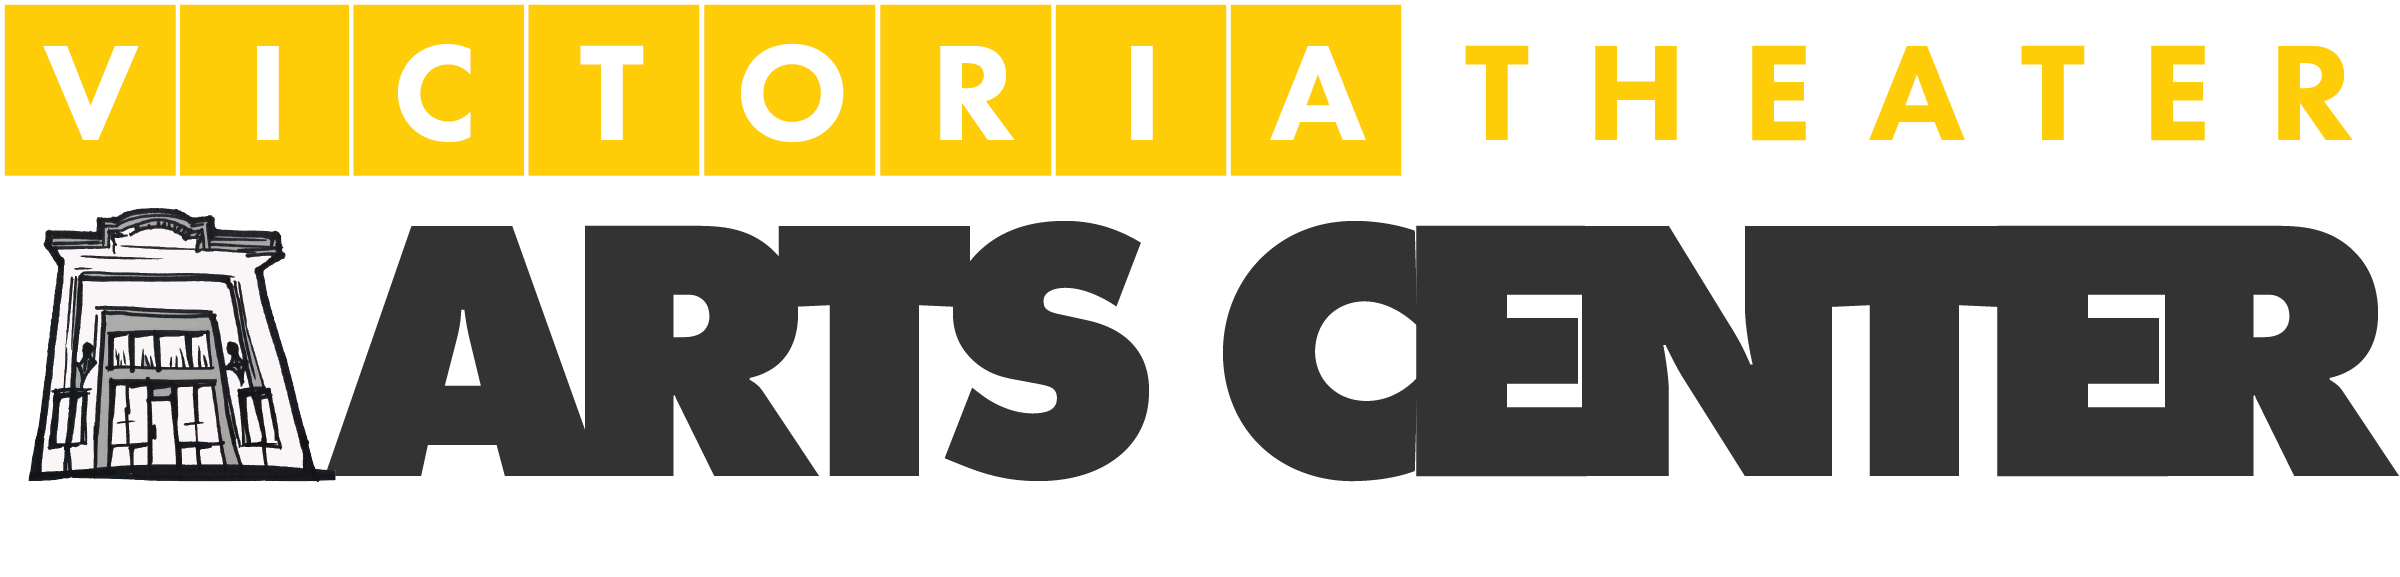 Victoria Theater Arts Center Logo